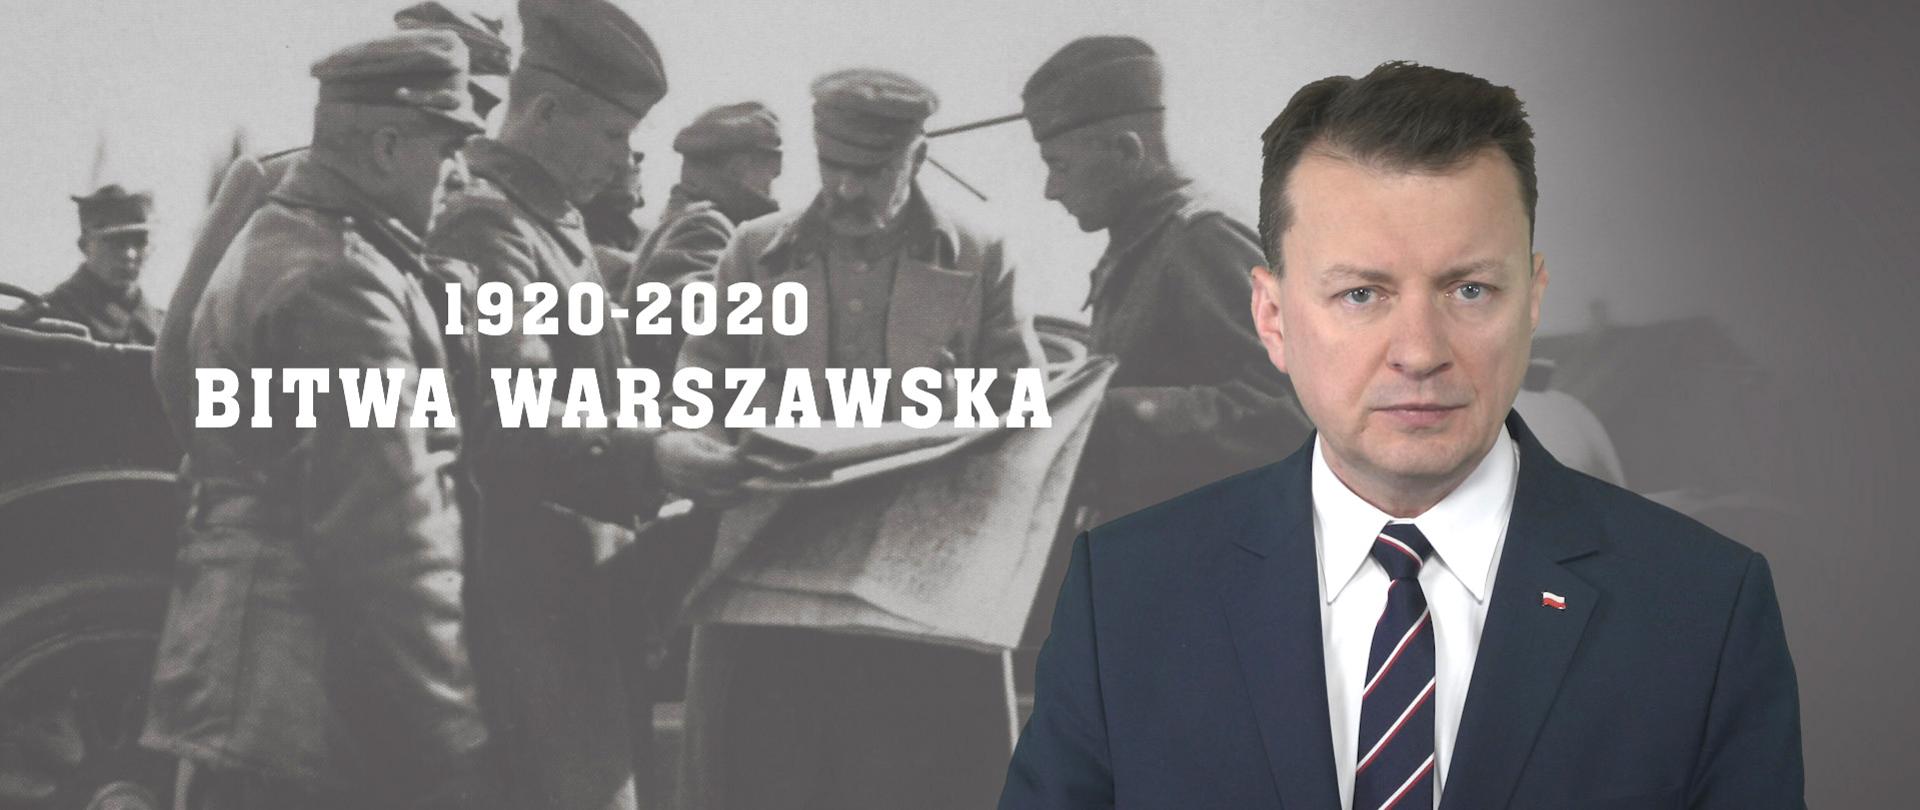 Polskie zwycięstwo dla wolności Europy. Wspólnie świętujmy 100. rocznicę Bitwy Warszawskiej